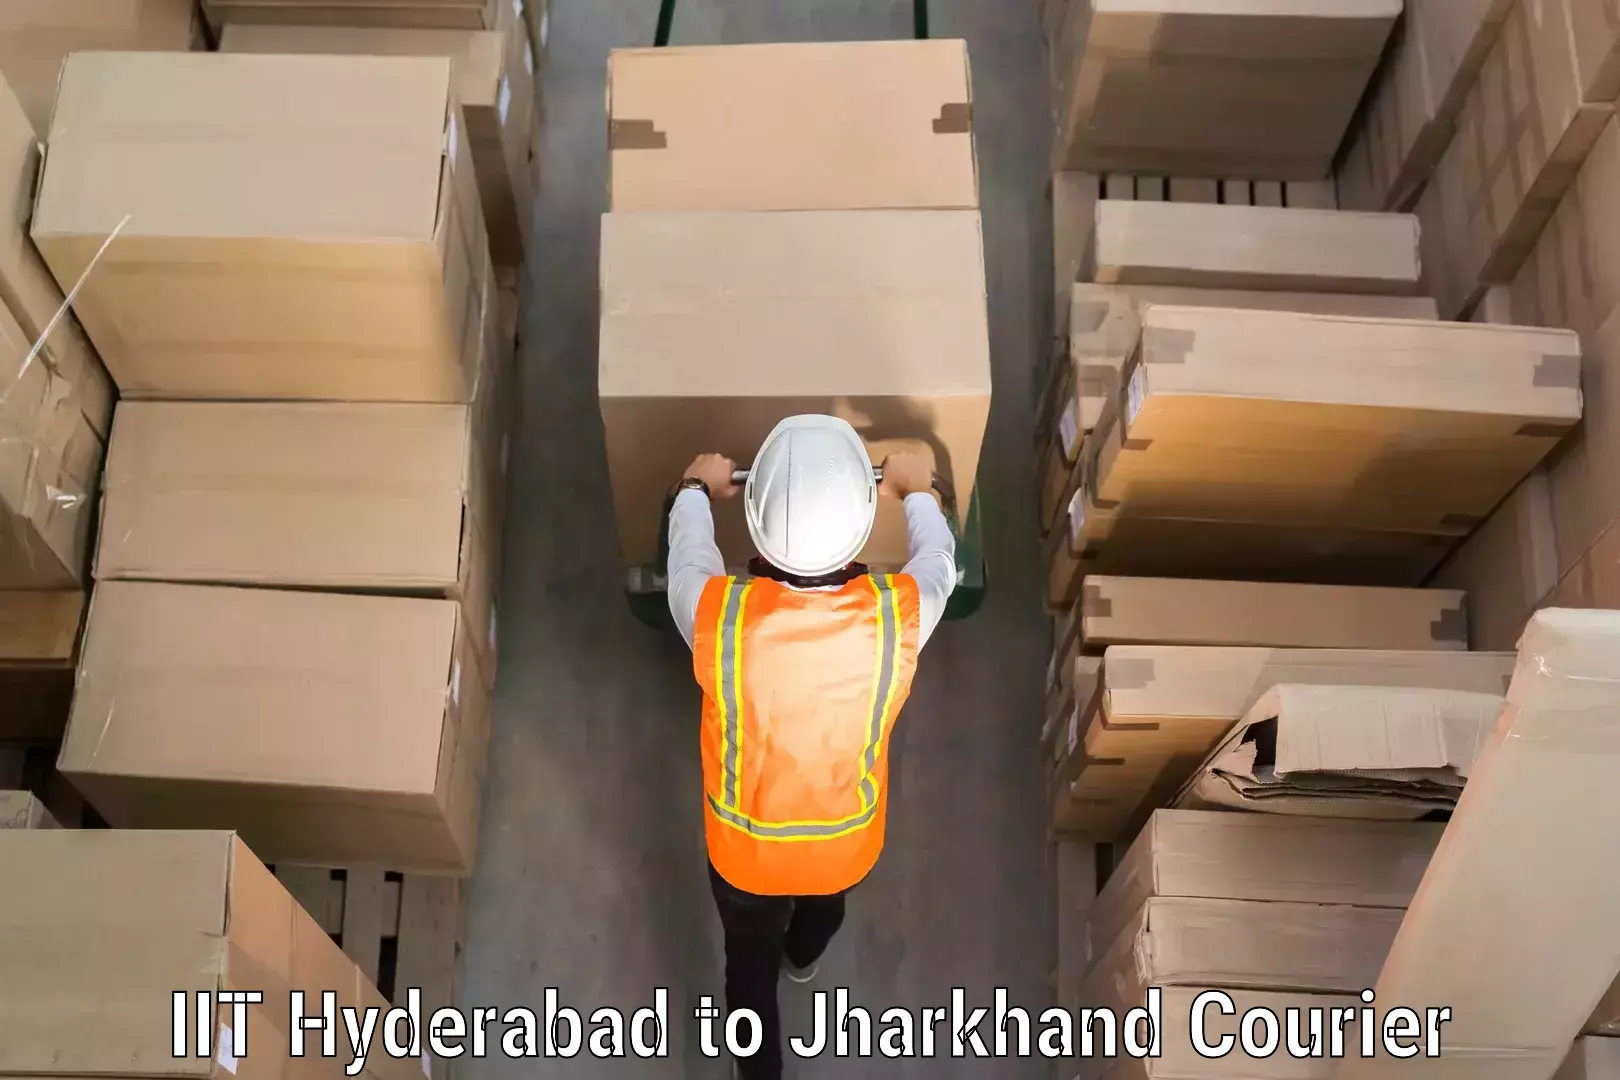 Door-to-door baggage service IIT Hyderabad to Hariharganj